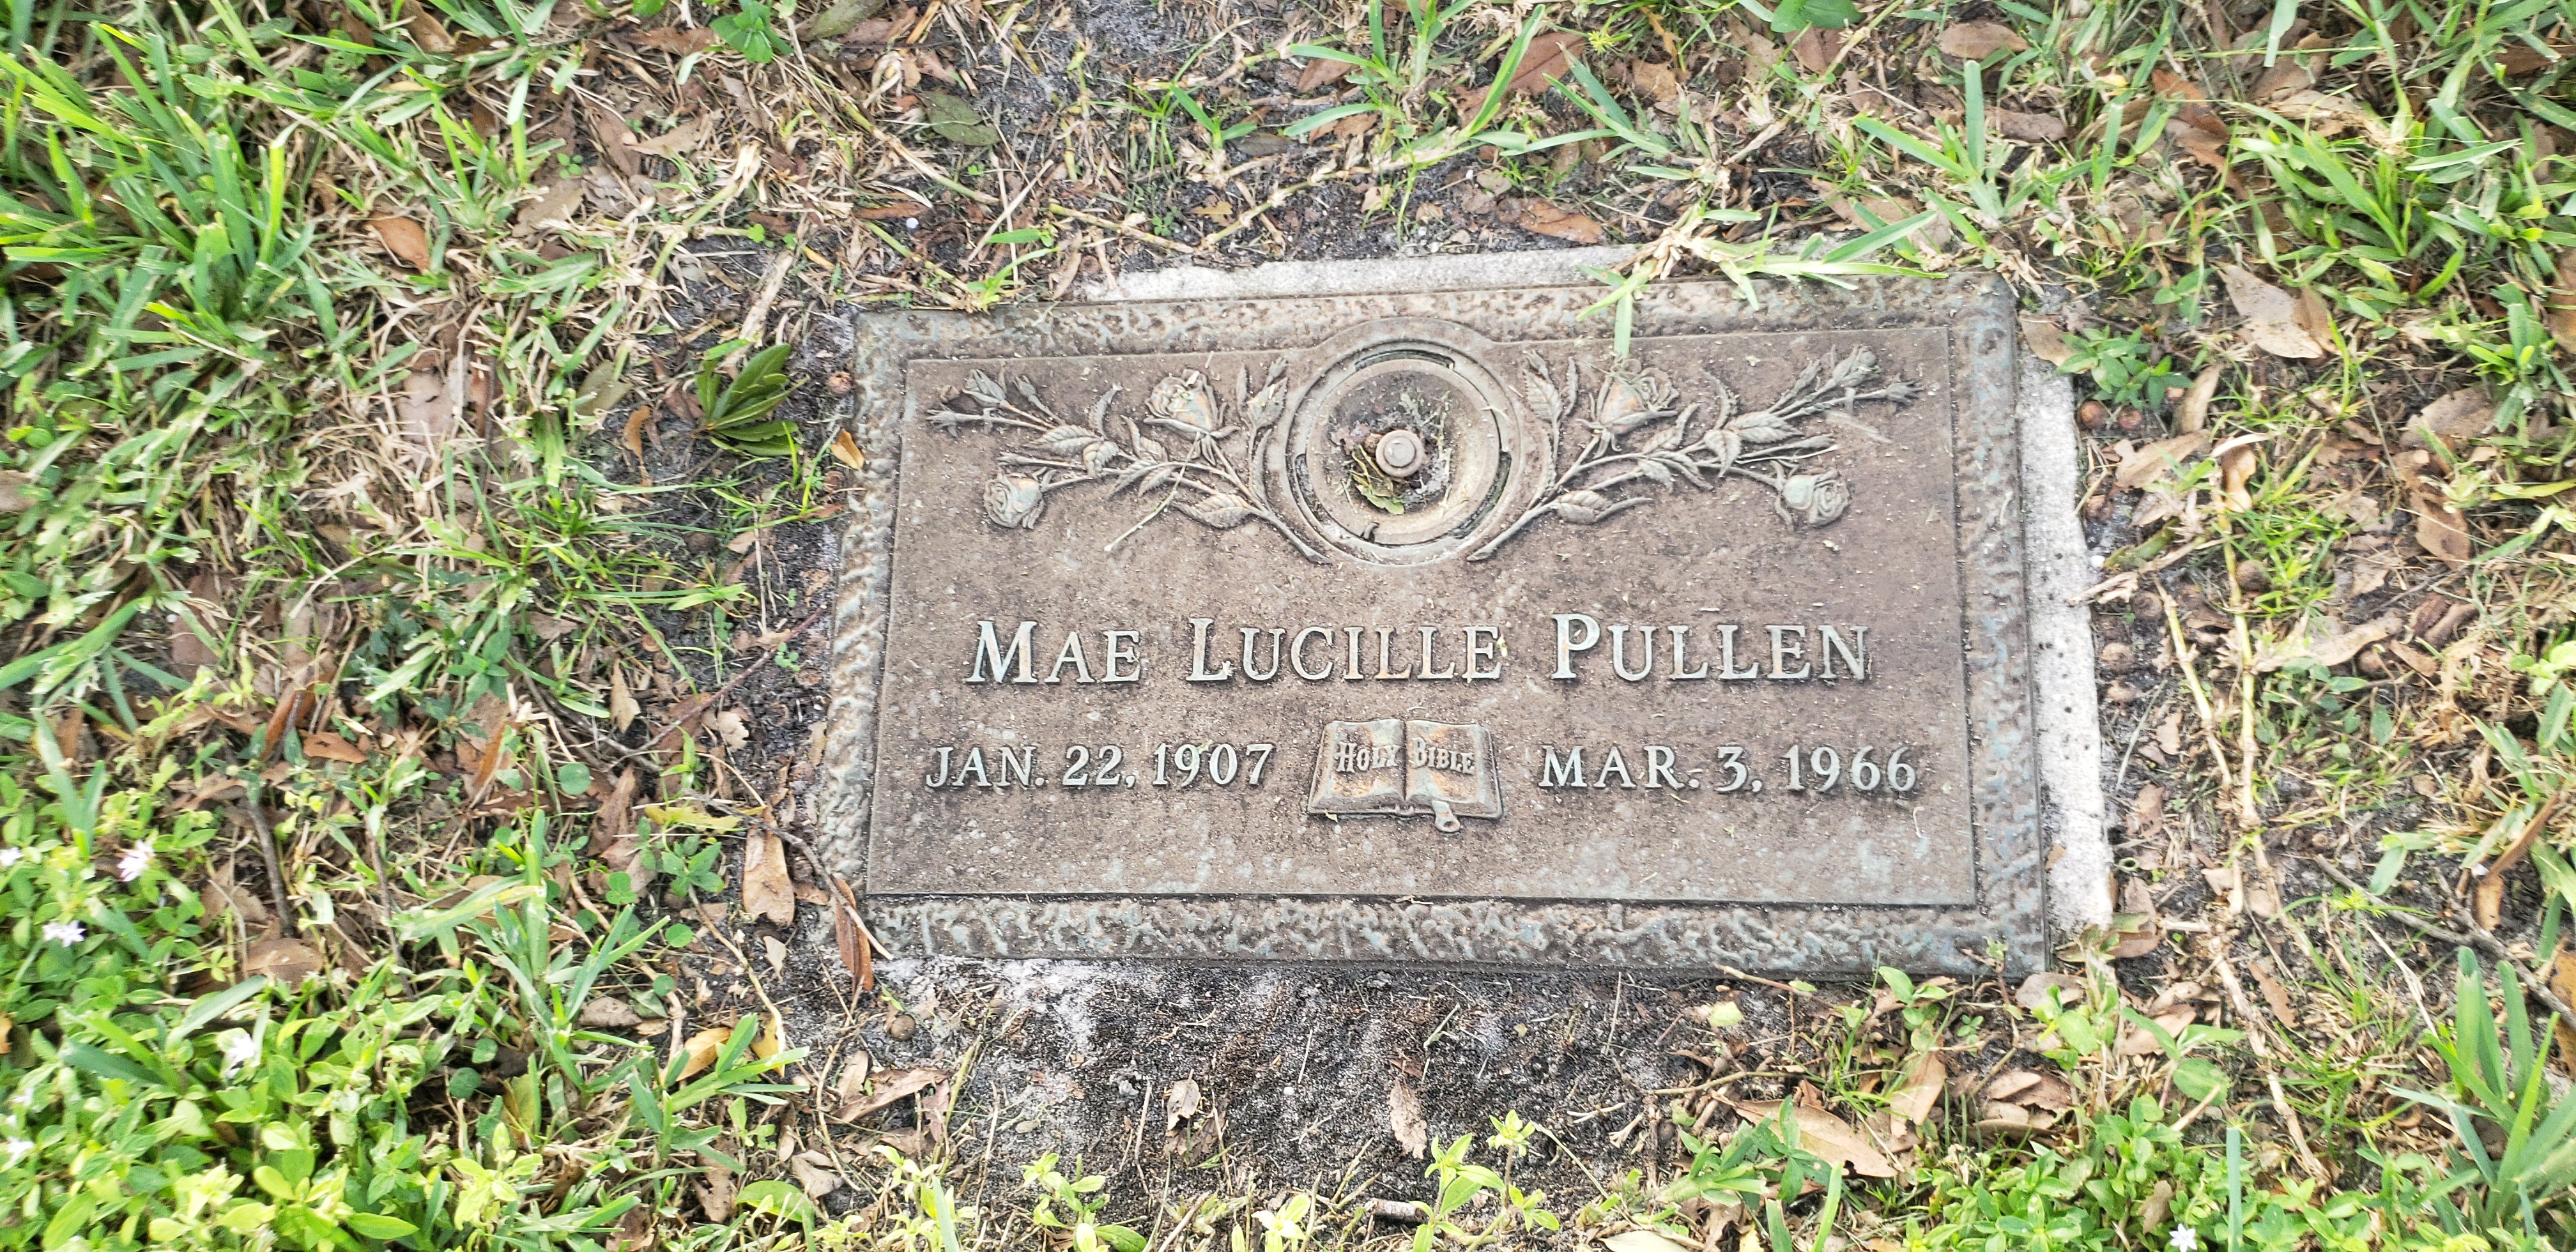 Mae Lucille Pullen